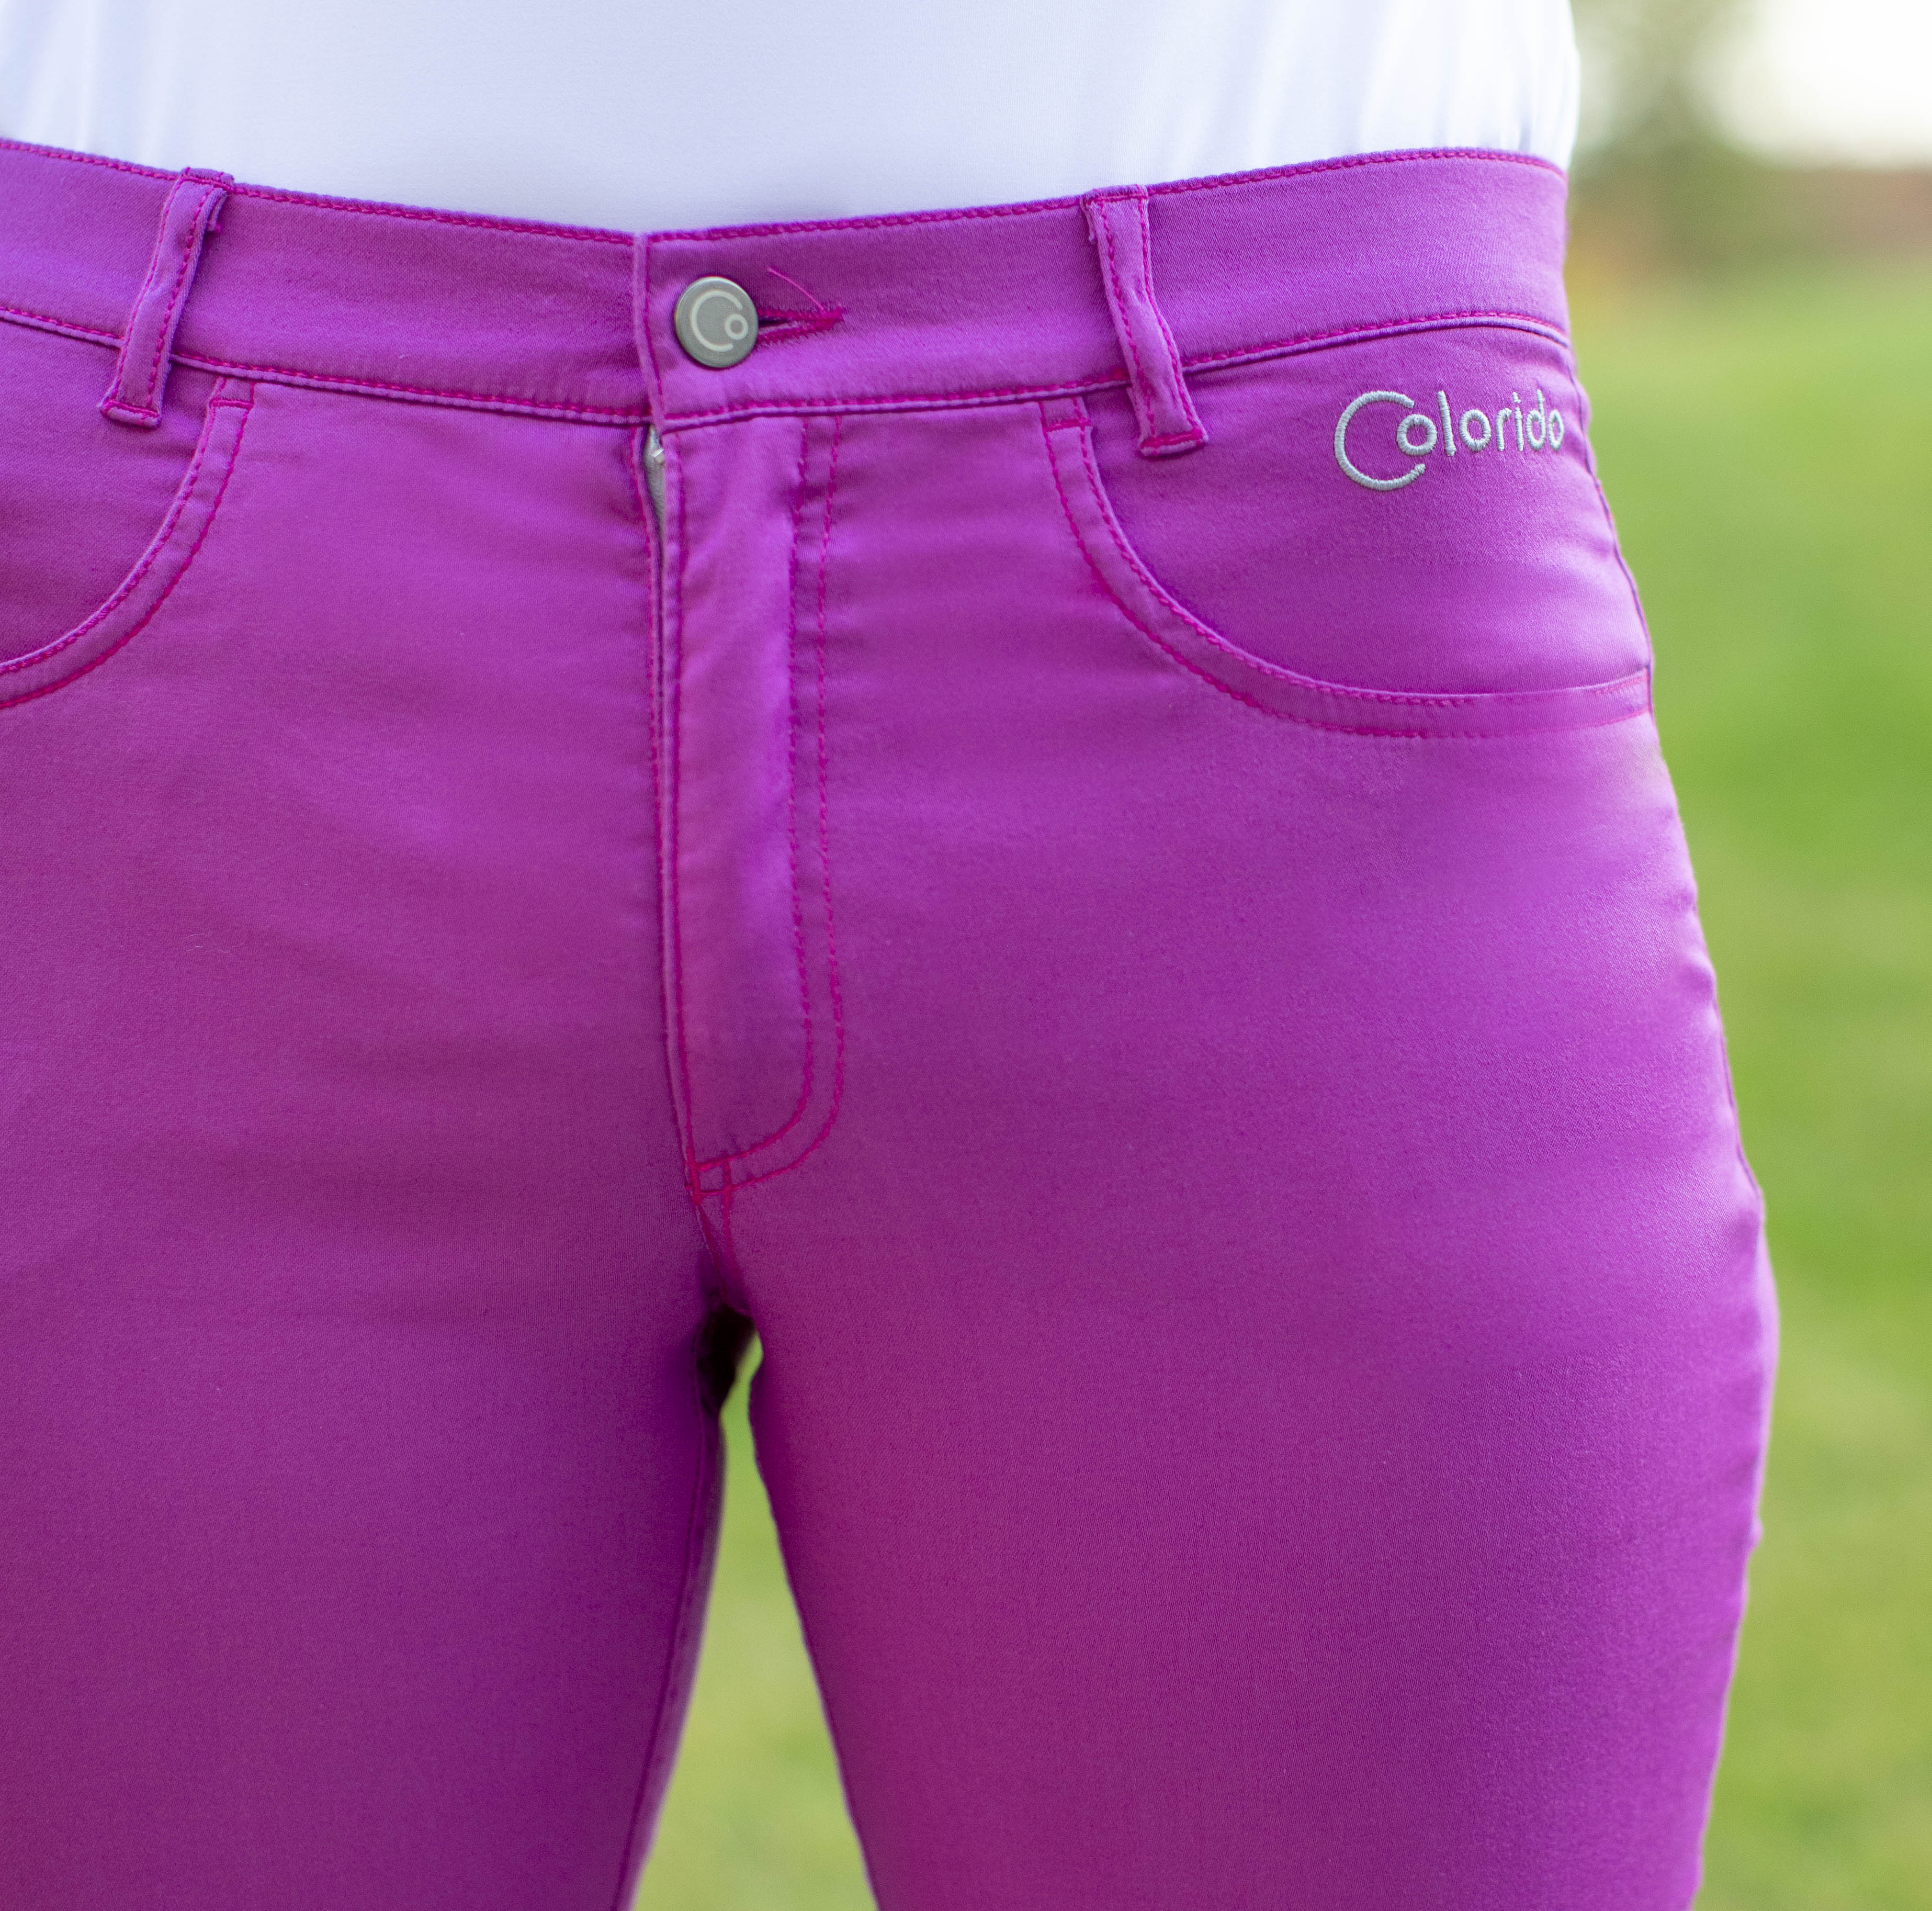 Dámské fialové golfové kalhoty Colorido Velikost: M, Délka nohavic: JEDNOTNÁ 80 cm, Barva: FIALOVÁ